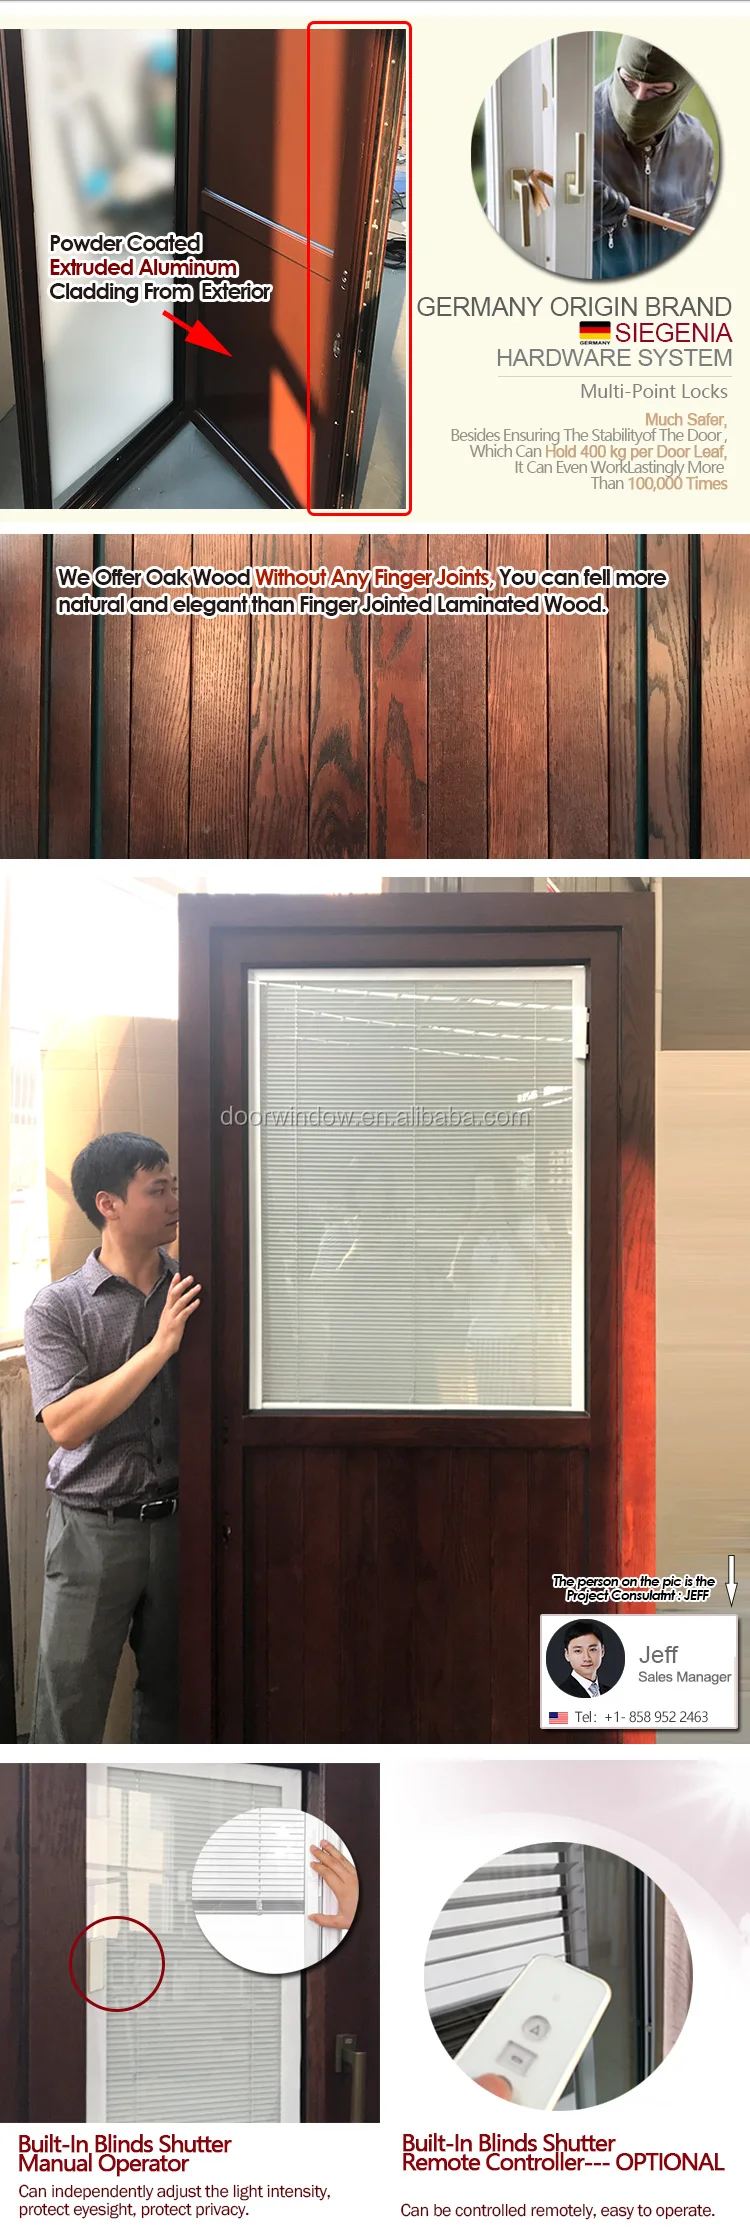 Teak wood front door design entrance doors swinging shutter